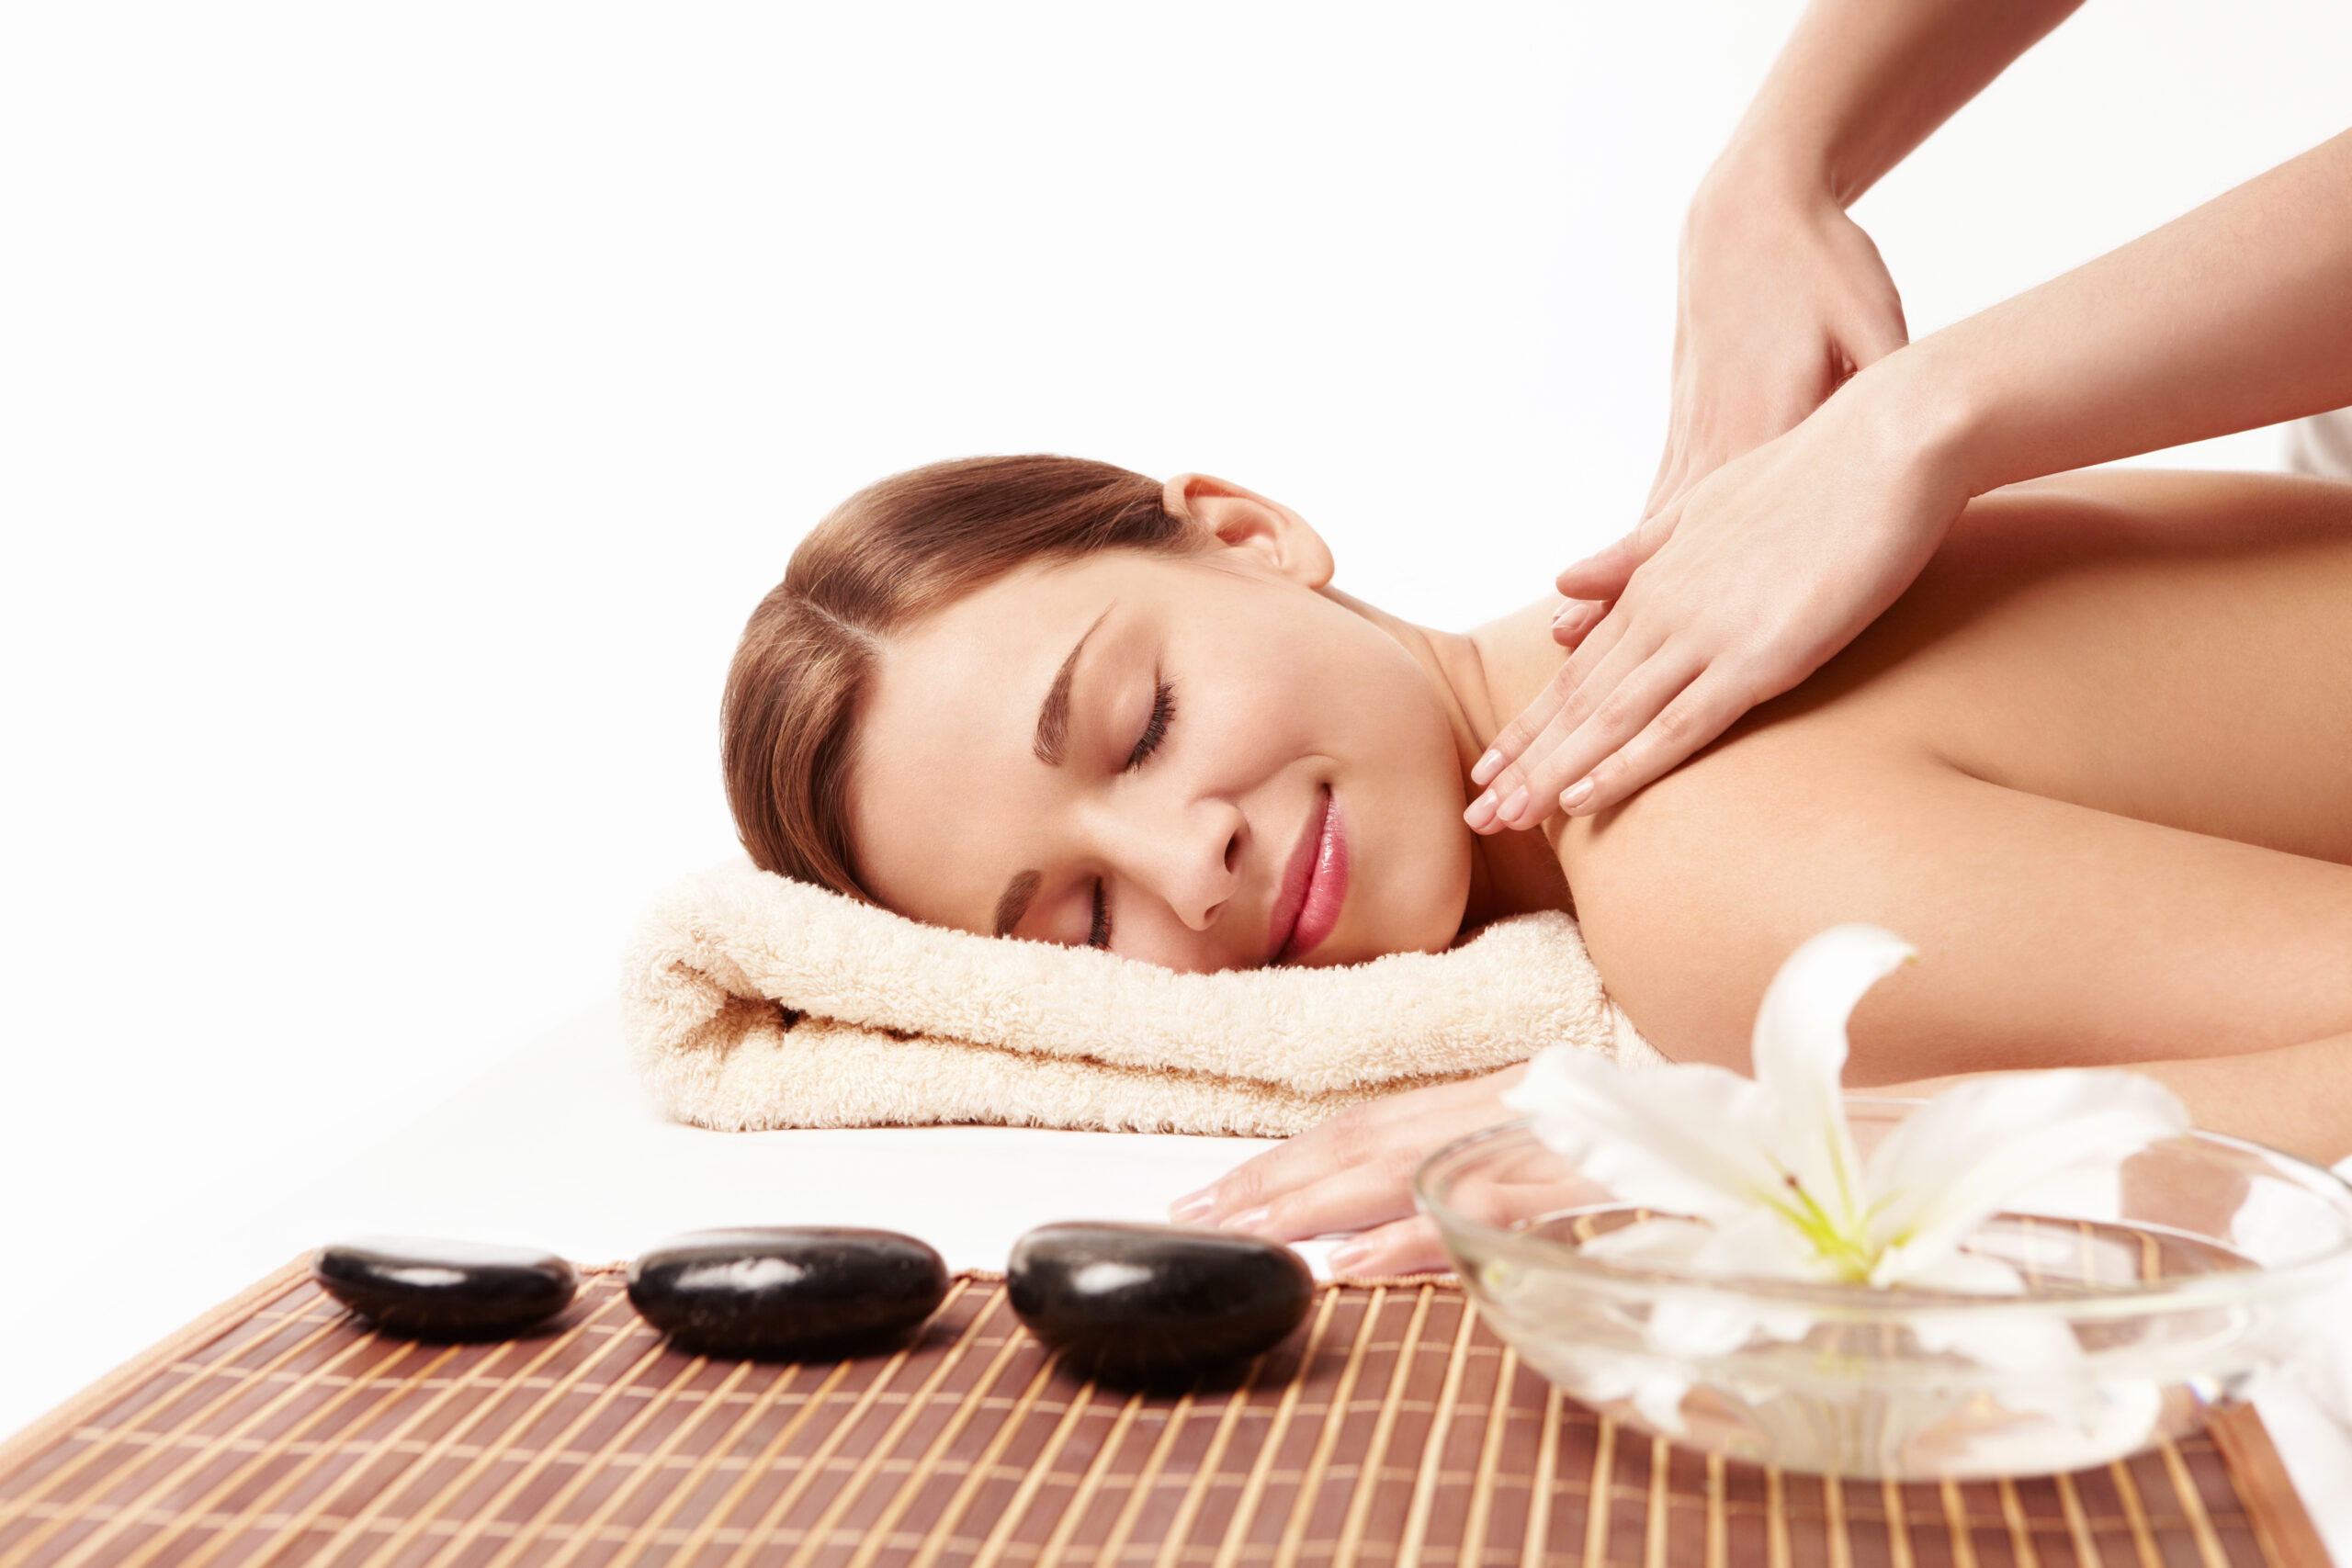 Full Body Massage - Asian Massage To You